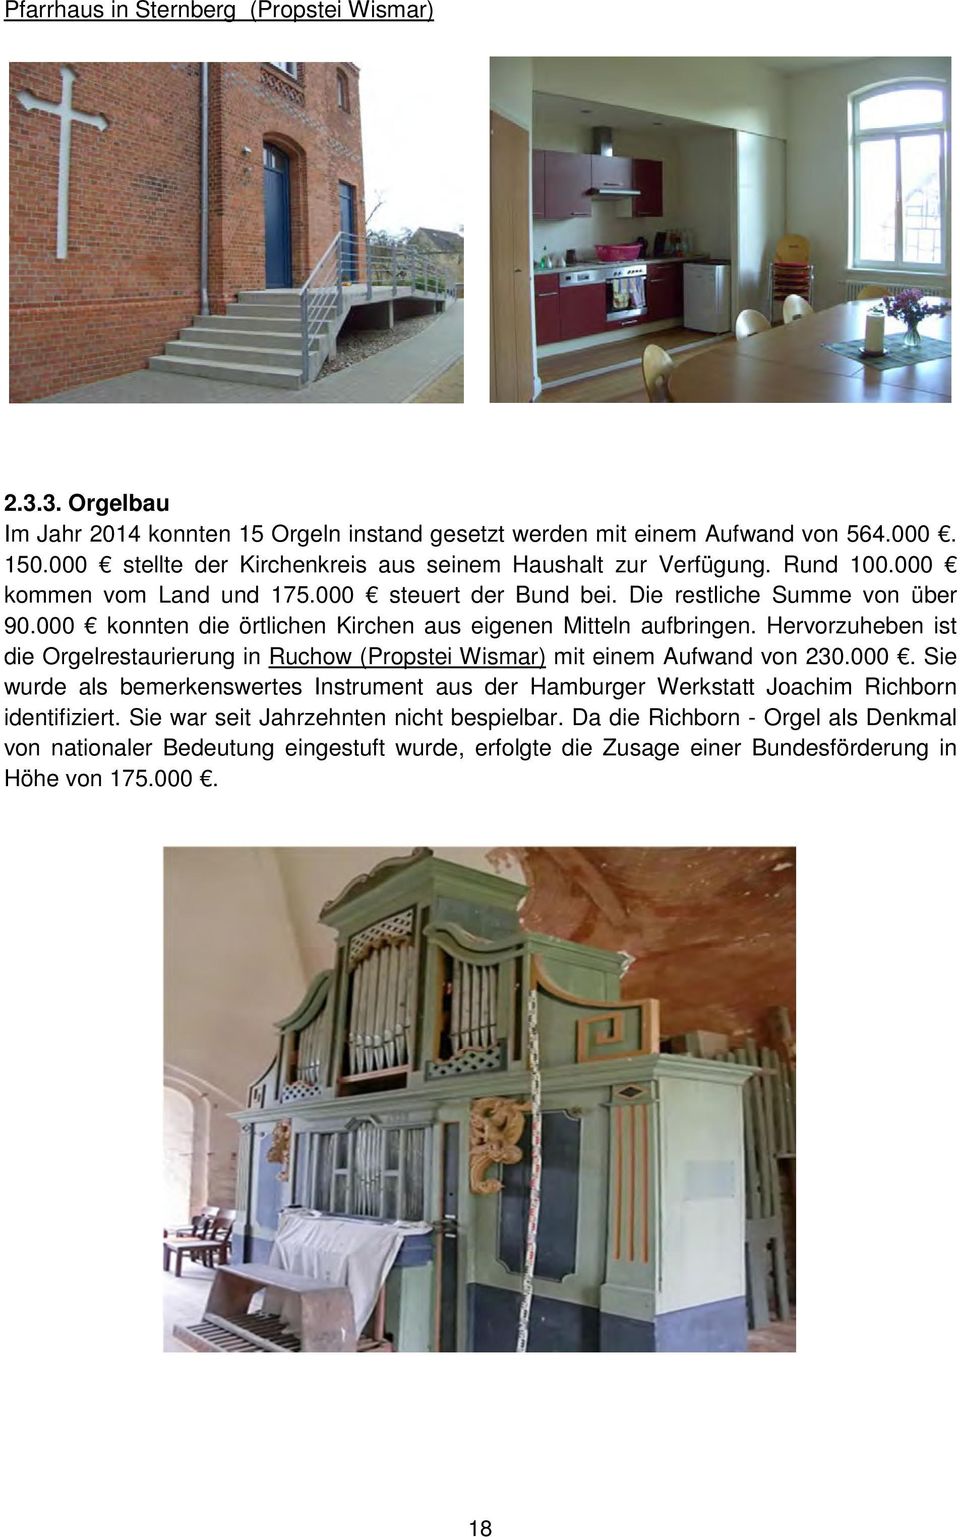 000 konnten die örtlichen Kirchen aus eigenen Mitteln aufbringen. Hervorzuheben ist die Orgelrestaurierung in Ruchow (Propstei Wismar) mit einem Aufwand von 230.000. Sie wurde als bemerkenswertes Instrument aus der Hamburger Werkstatt Joachim Richborn identifiziert.